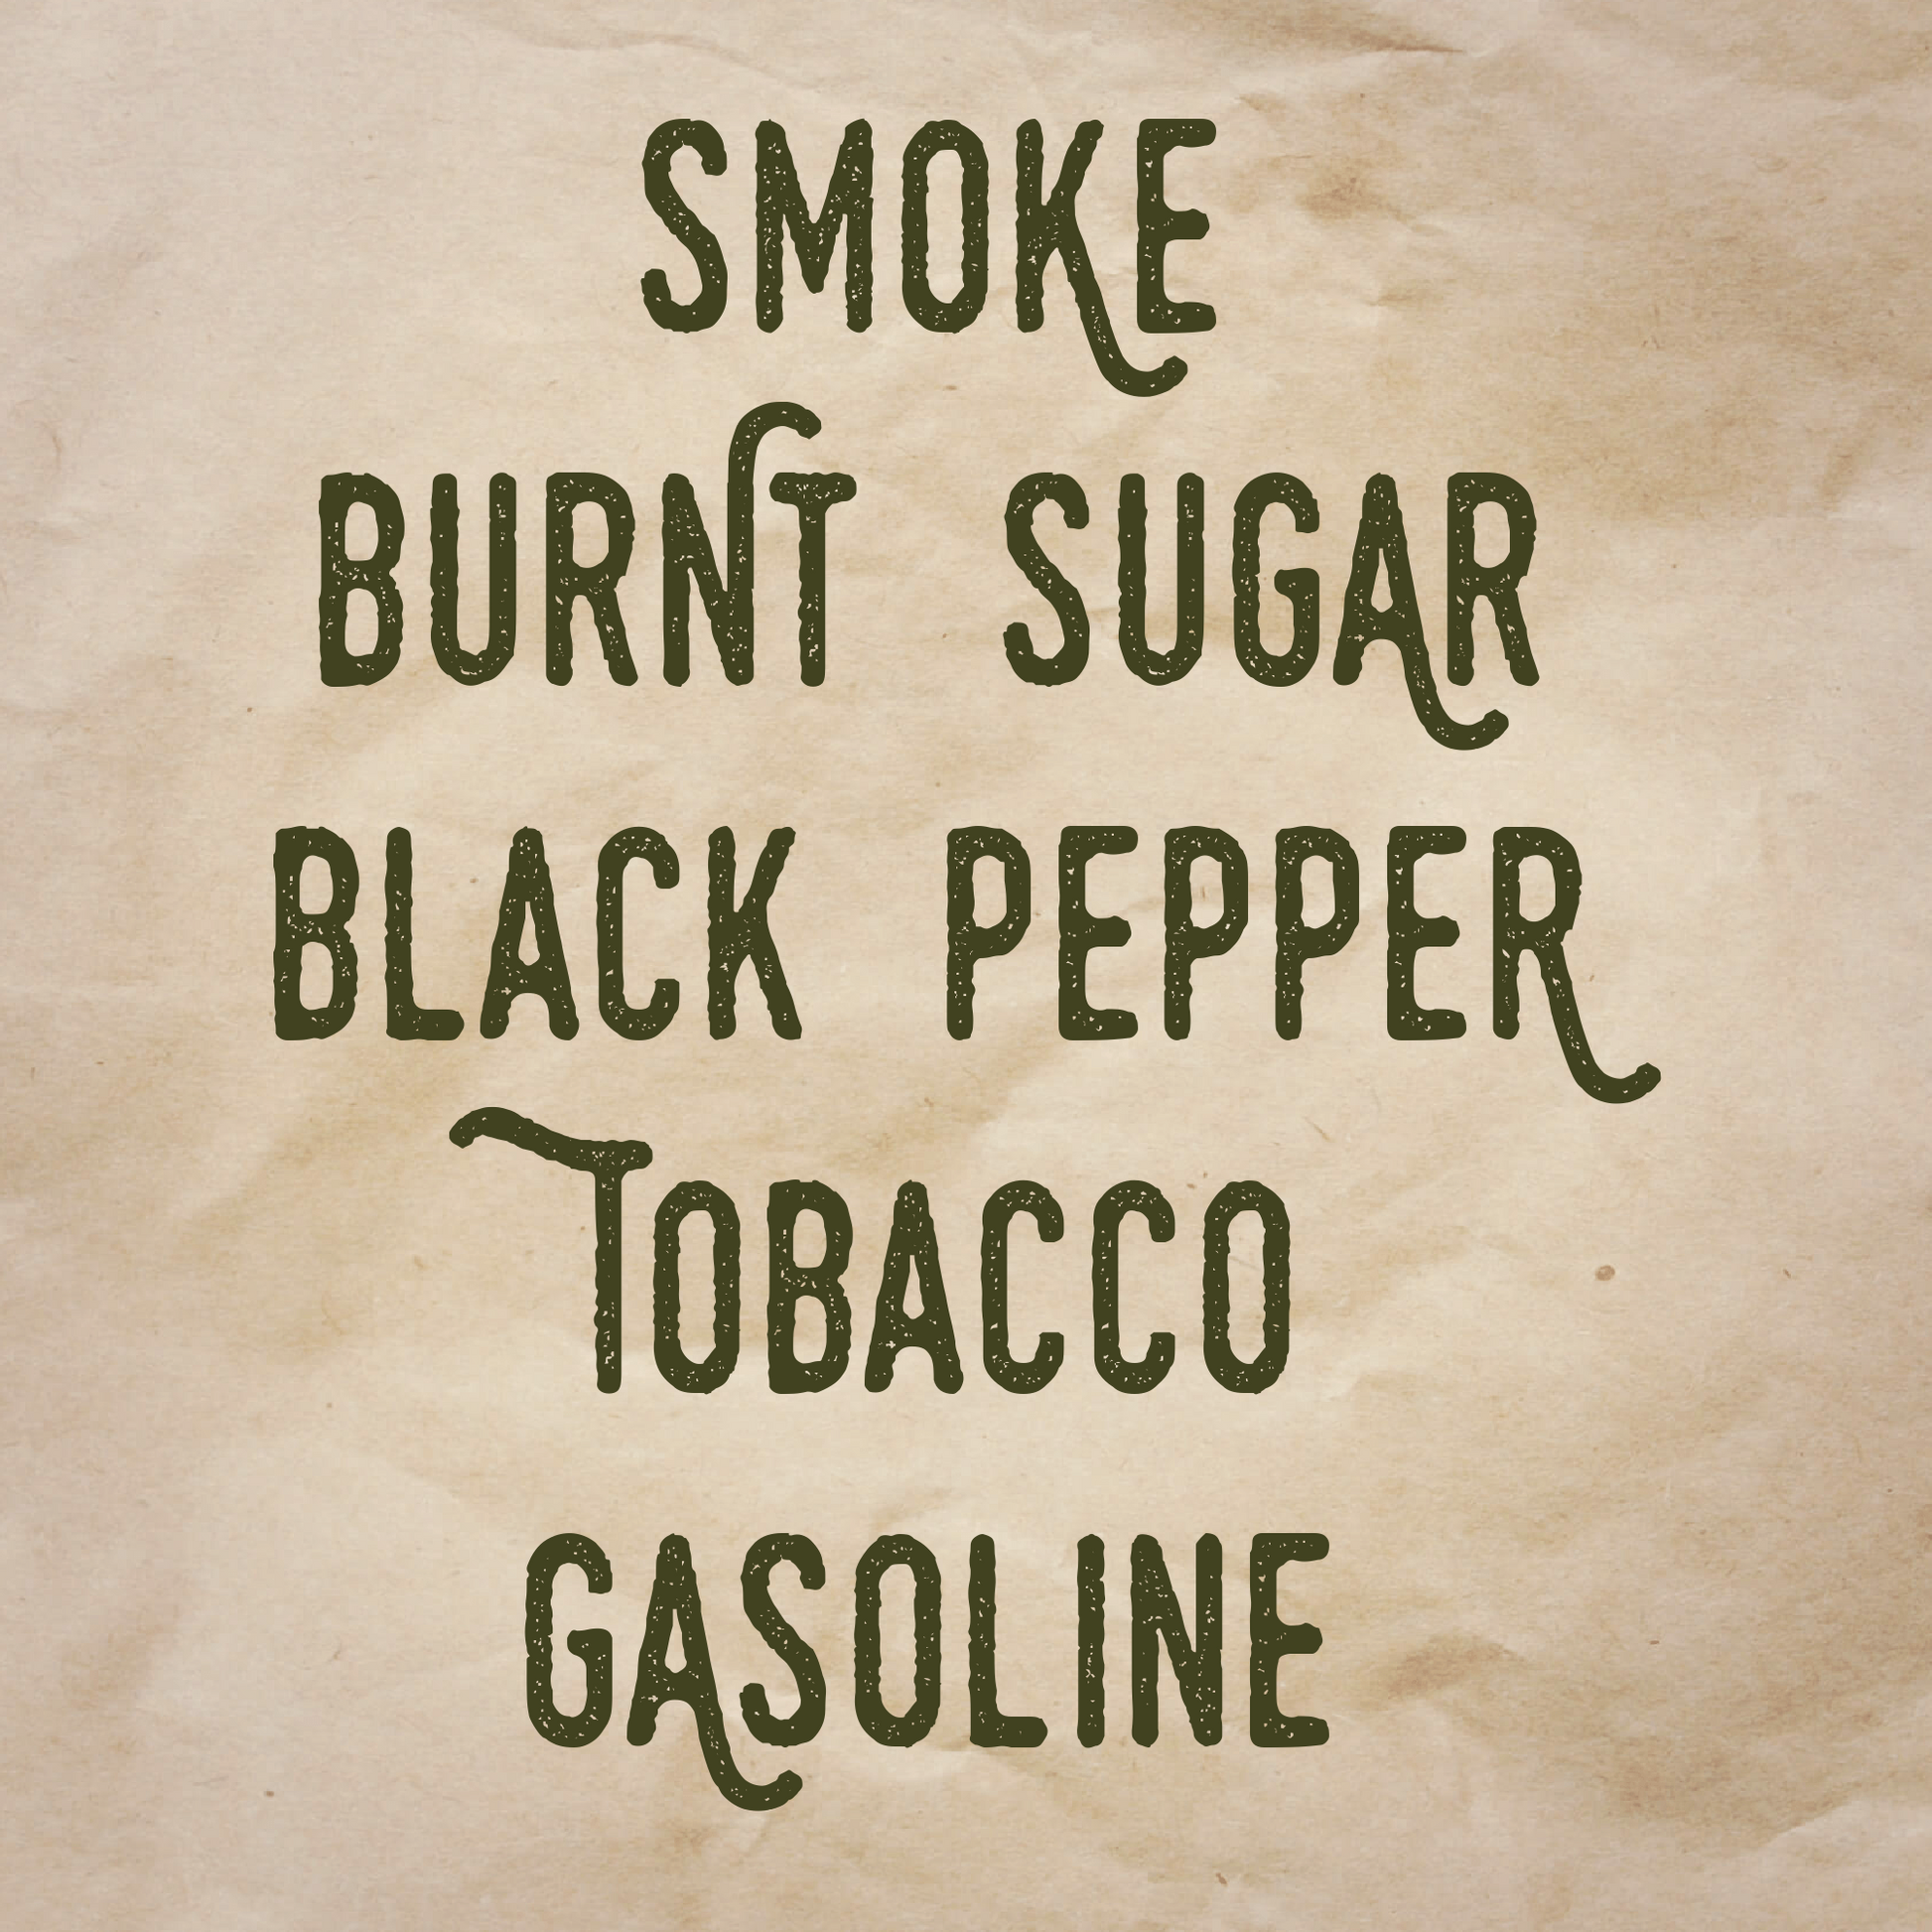 Crime Brûlée scent notes: Smoke, burnt sugar, black pepper, tobacco, and gasoline.